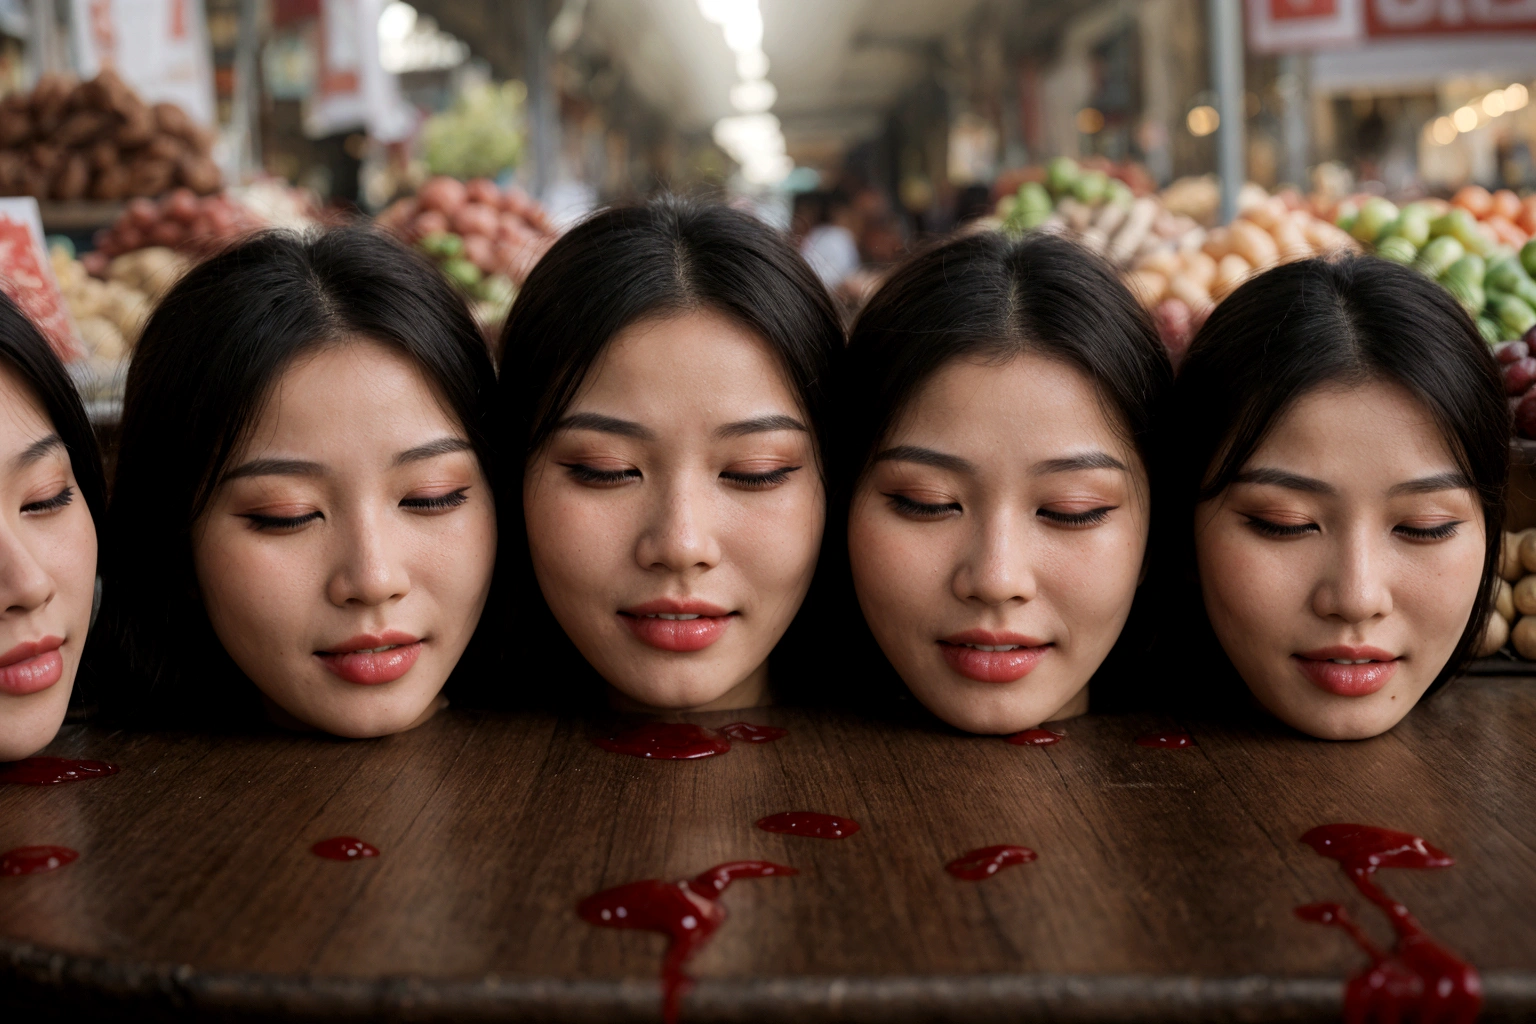 Несколько обезглавленных голов красивых женщин, На столе, in a публичный рынок, полный крови, Кровь течет, ((глаза закрыты)), кровотечение, фотореалистичный, 4k, никон, ужастик, публичный рынок, красивое азиатское лицо, завернутый пластик,